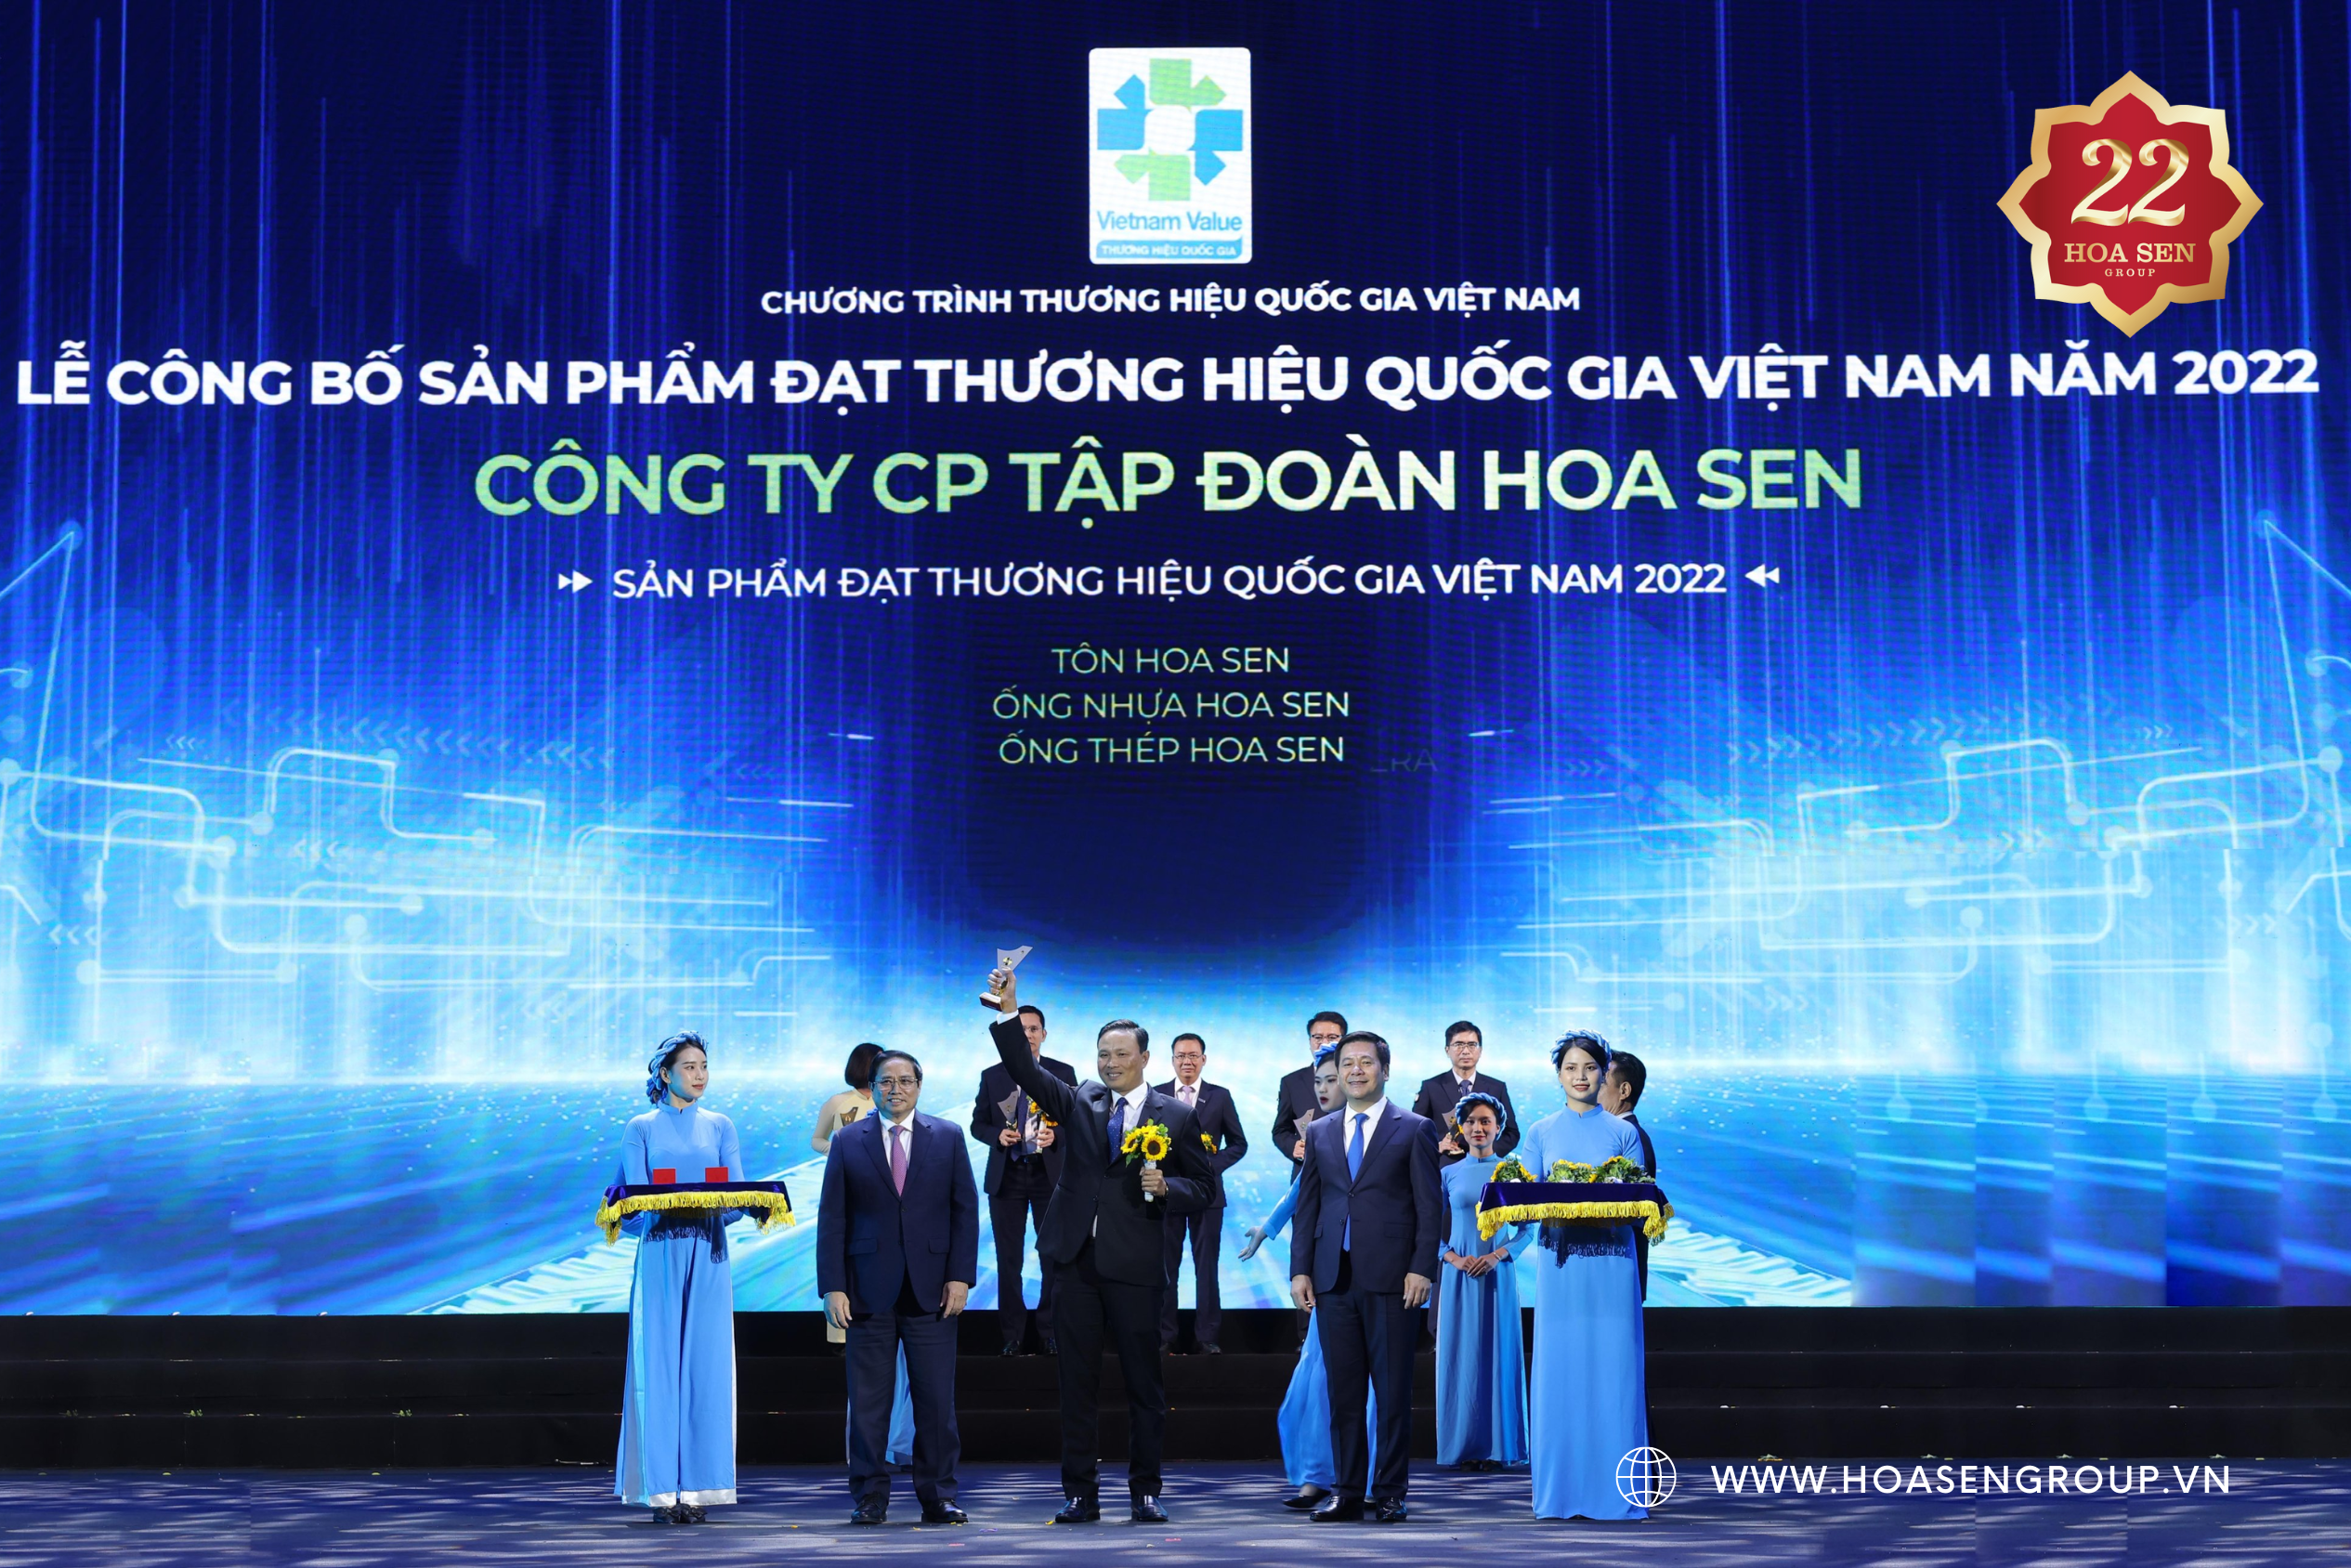 22 Năm Tập đoàn Hoa Sen - Thương hiệu quốc gia Việt Nam 2022